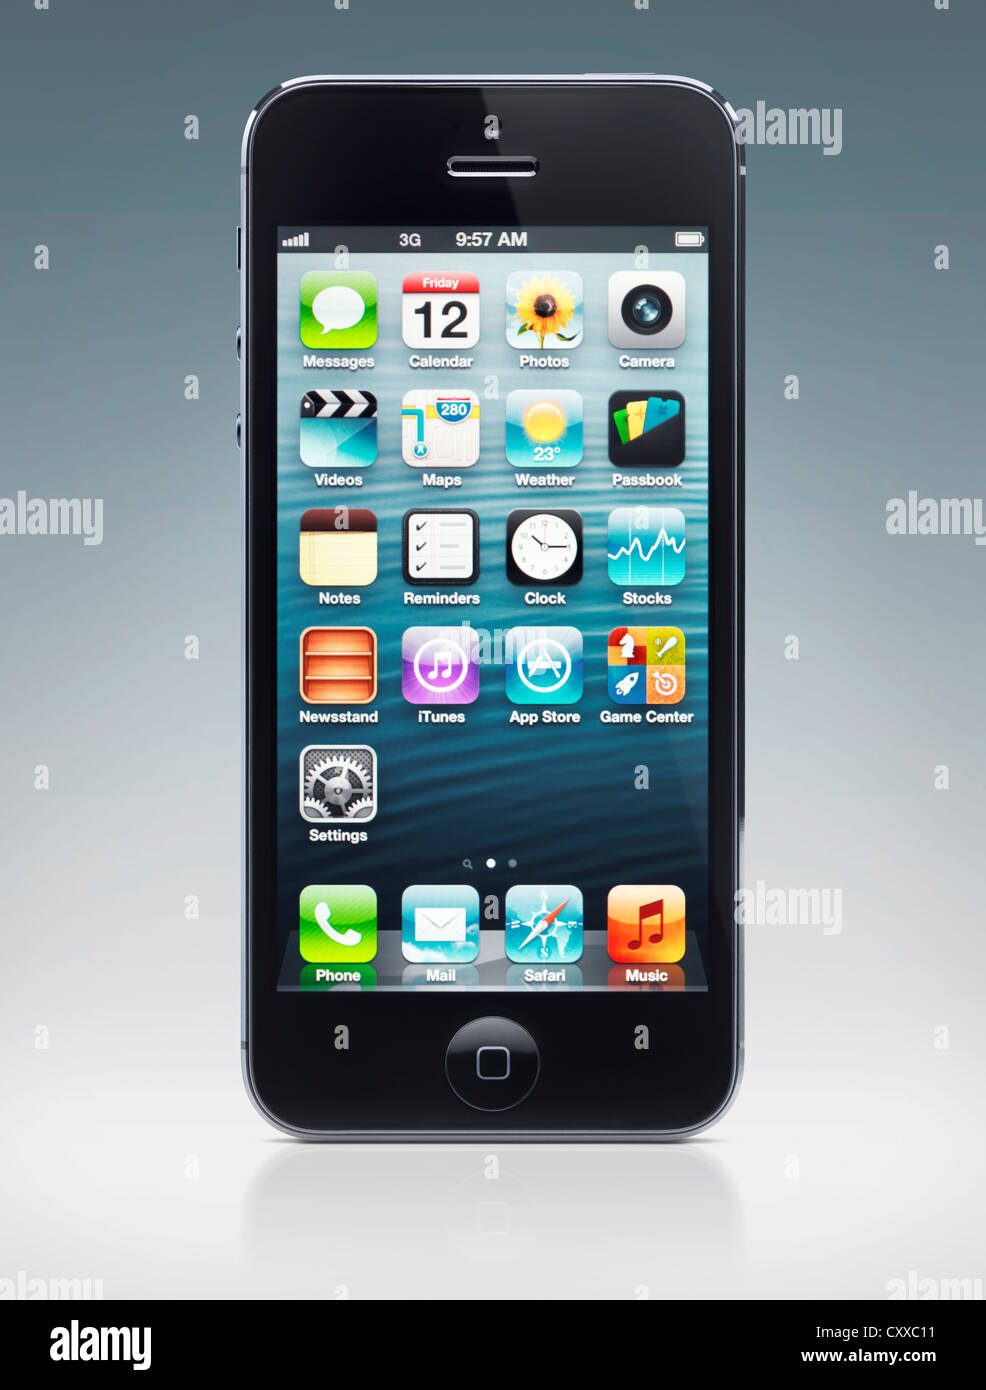 Apple iPhone 5: Chiếc điện thoại Apple iPhone 5 là một sản phẩm đẹp mắt và được trang bị tính năng tuyệt vời. Xem hình ảnh liên quan để khám phá thiết kế tinh tế và các tính năng vượt trội của iPhone 5.